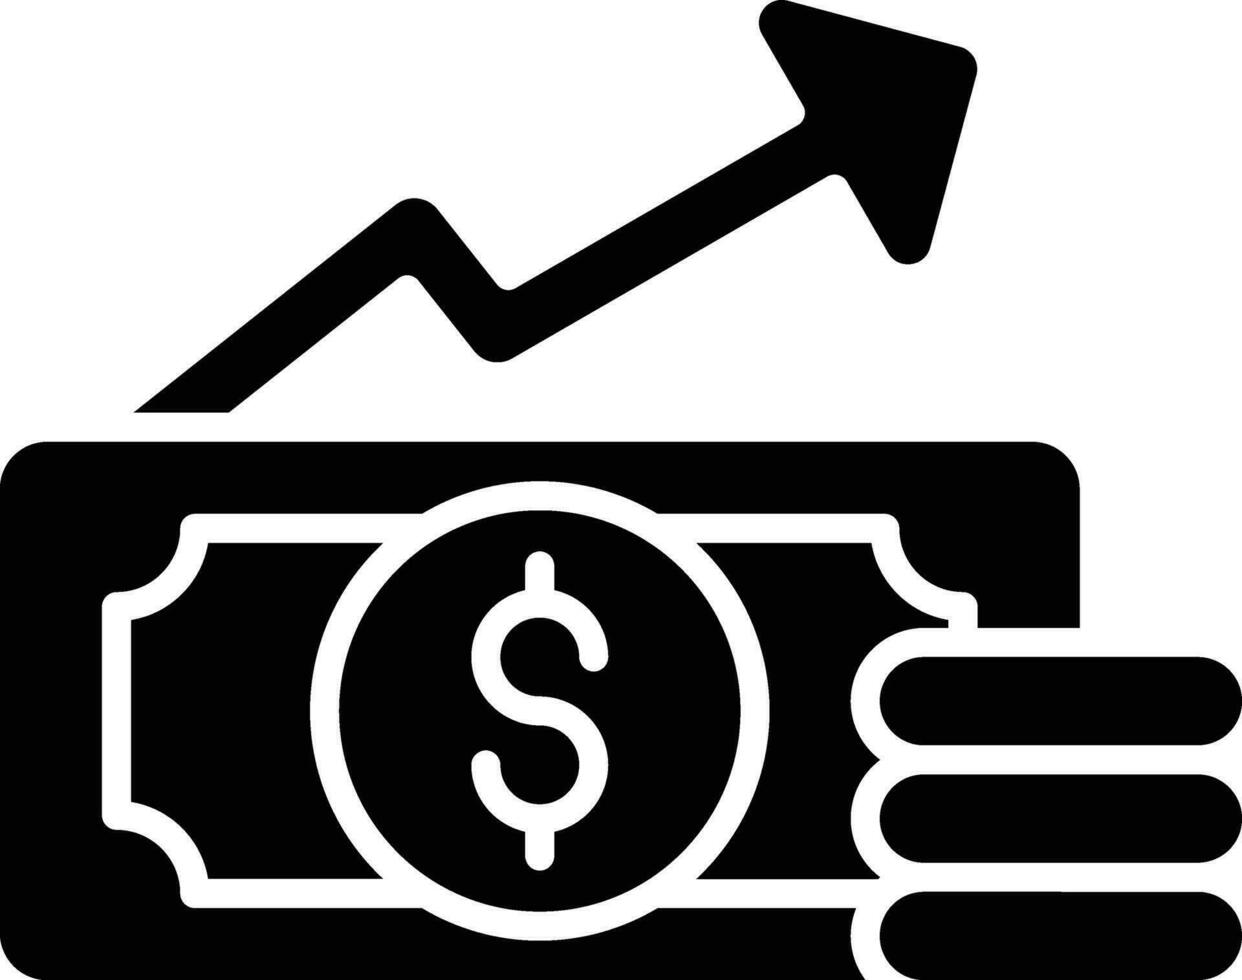 salarisverhoging vector icon